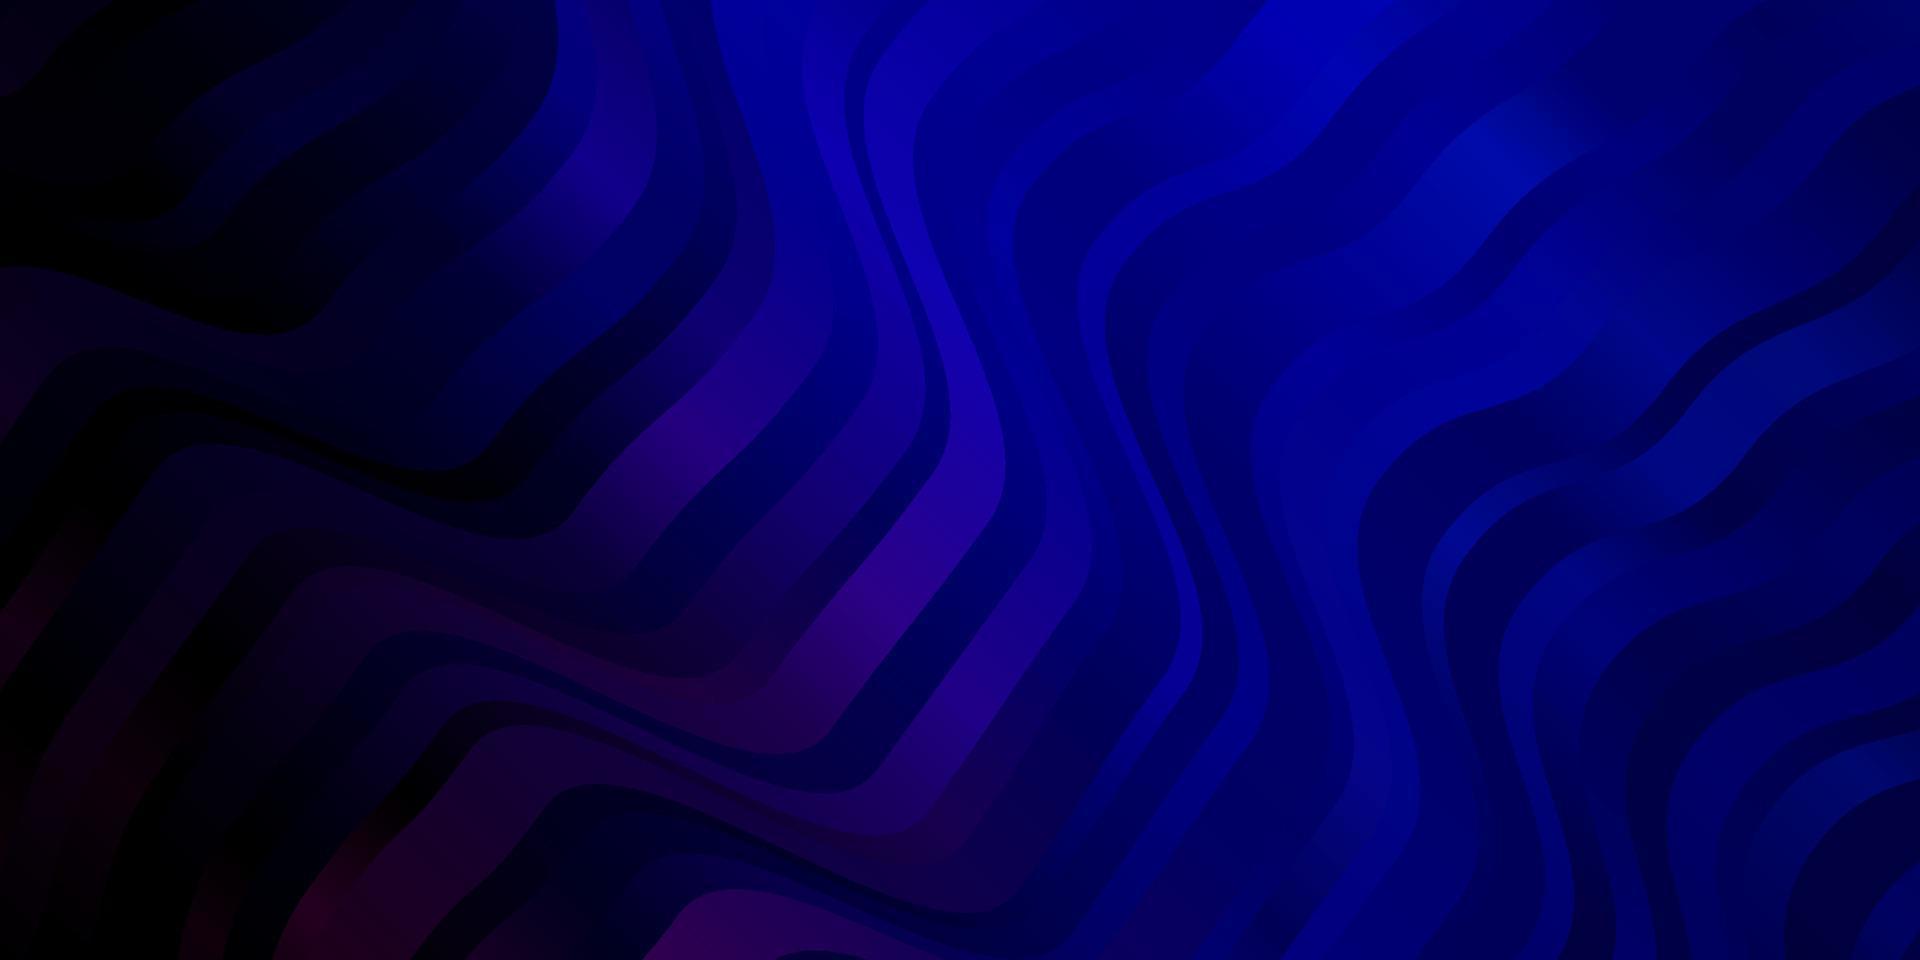 mörkrosa, blå vektorstruktur med kurvor. vektor